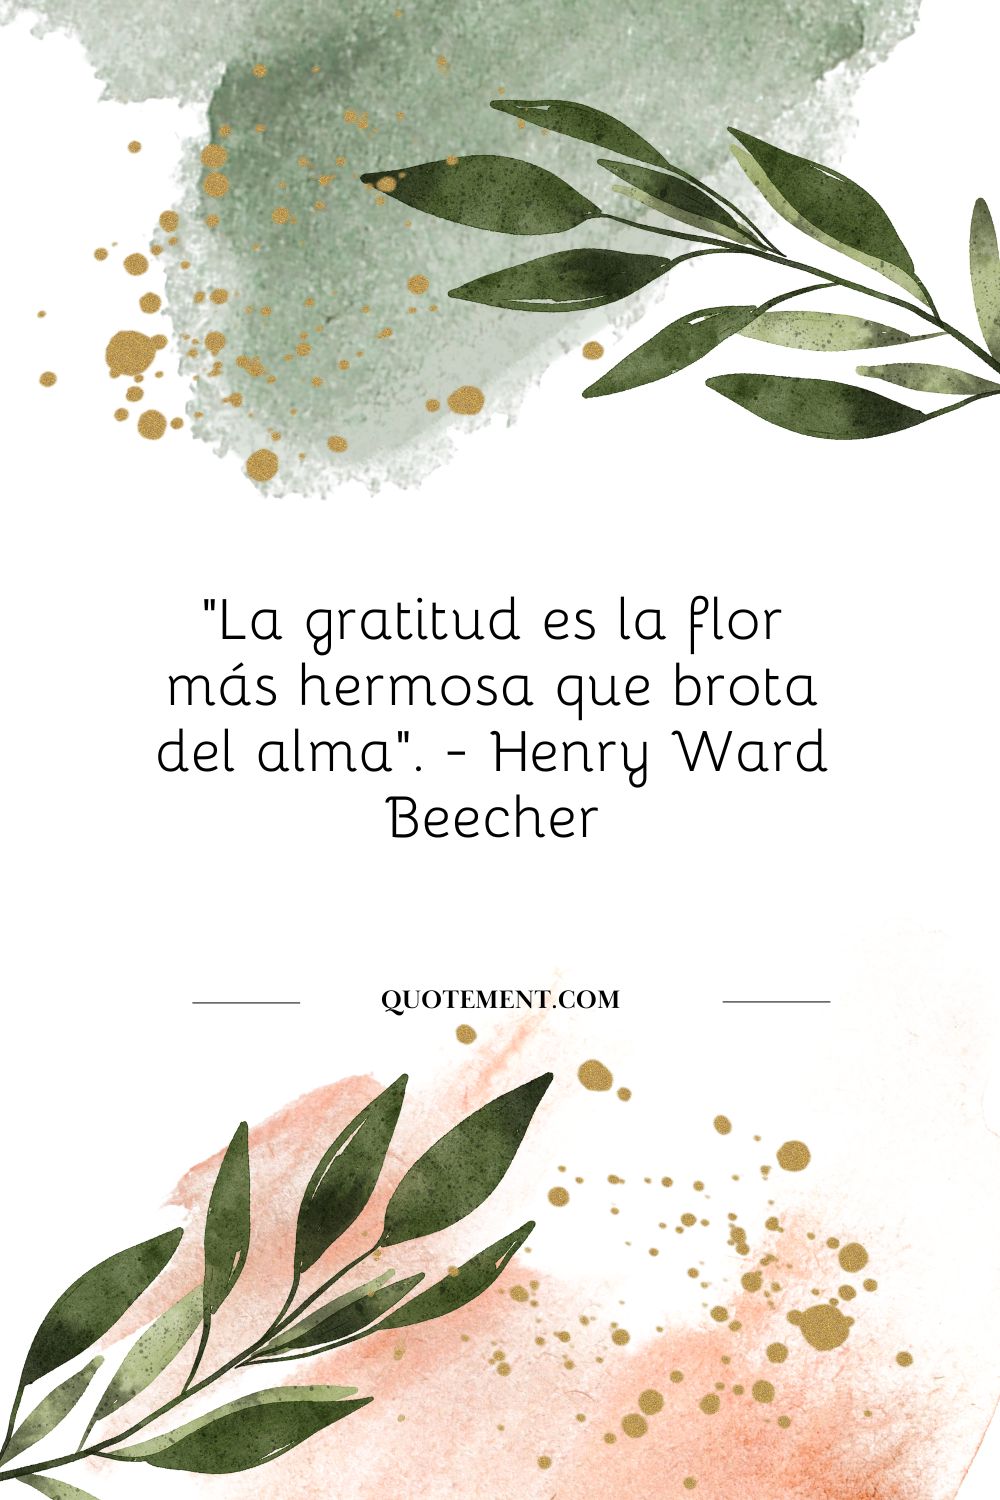 "La gratitud es la flor más bella que brota del alma". - Henry Ward Beecher